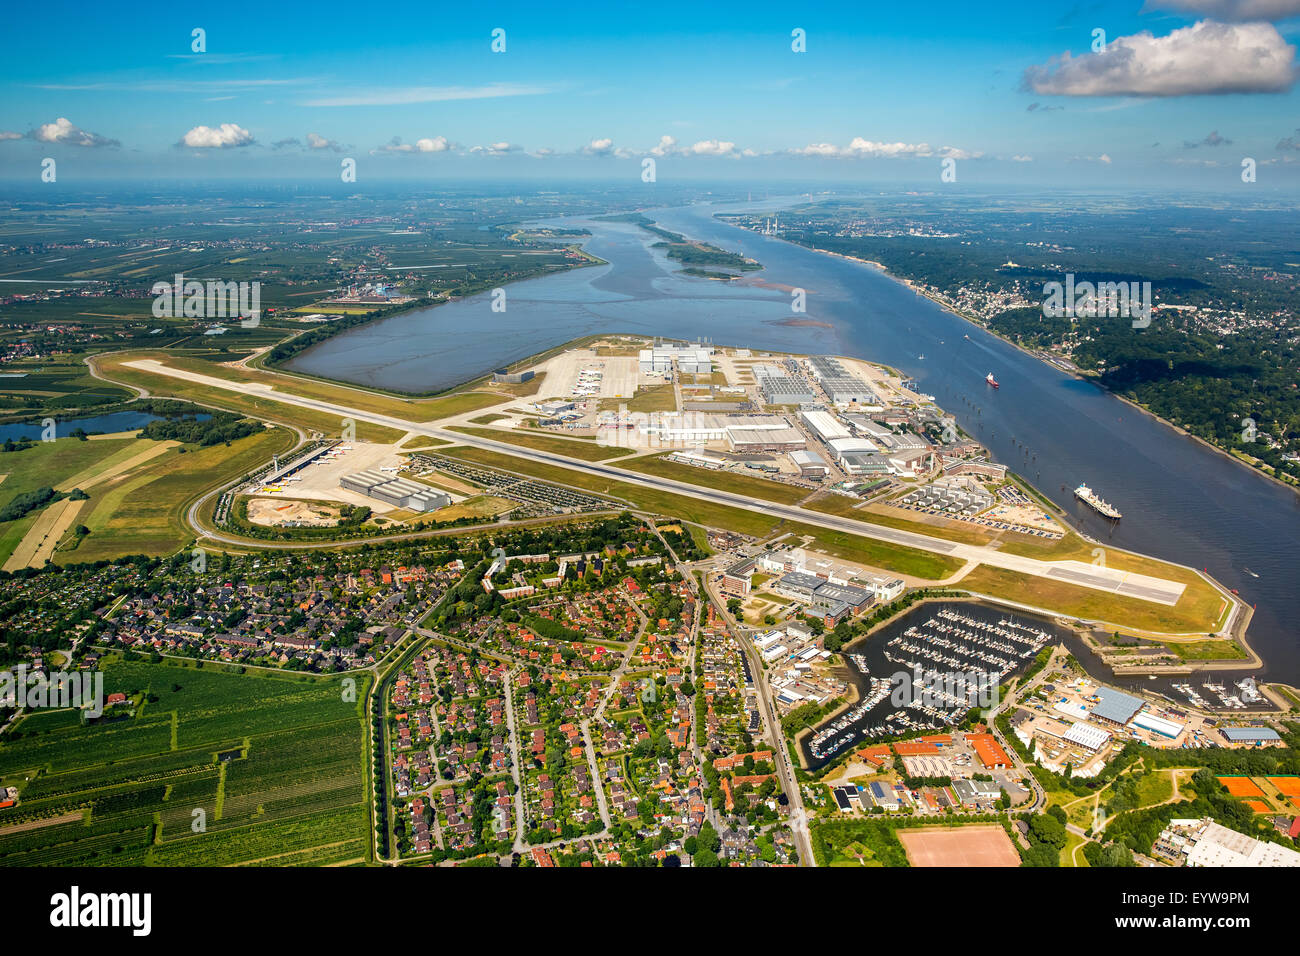 La piste et halls de production de l'Airbus Finkenwerder, l'aéroport, l'aéroport de Hambourg, Allemagne Banque D'Images